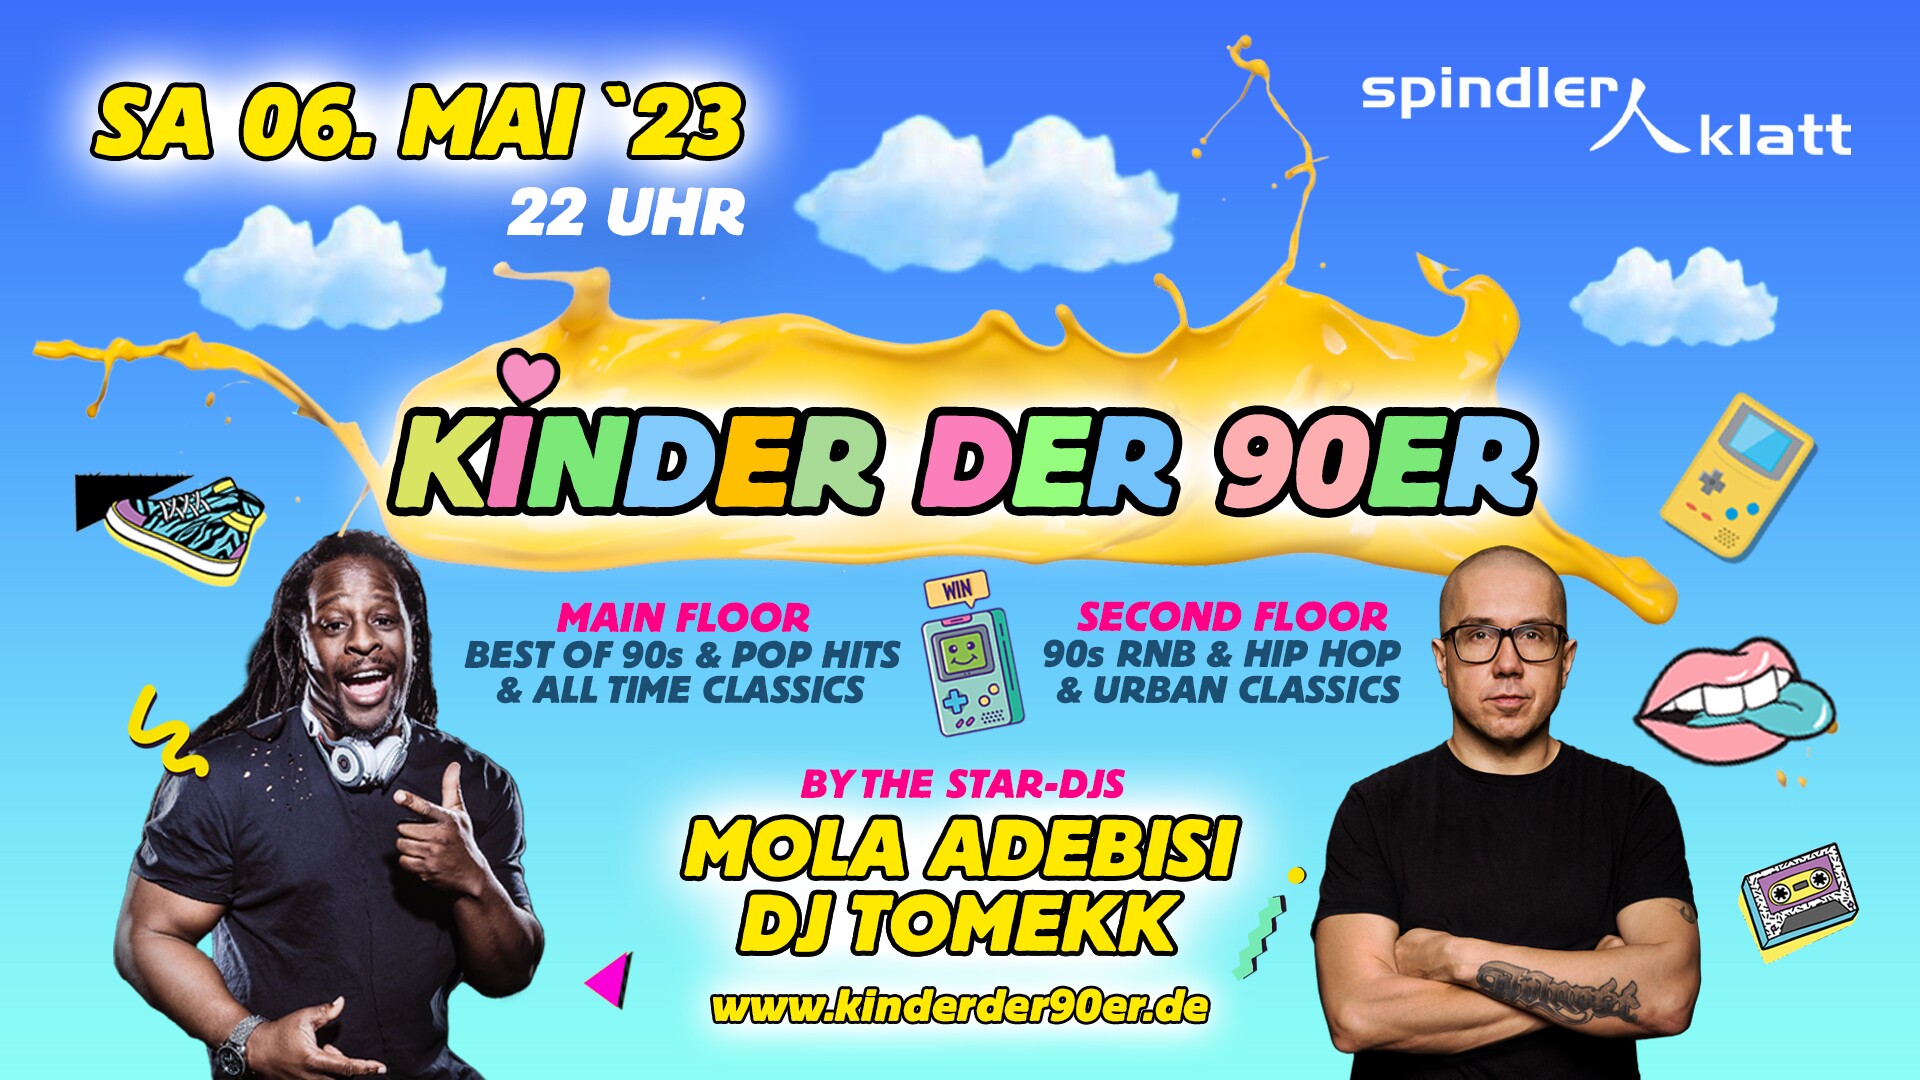 Spindler & Klatt Berlin Eventflyer #1 vom 06.05.2023